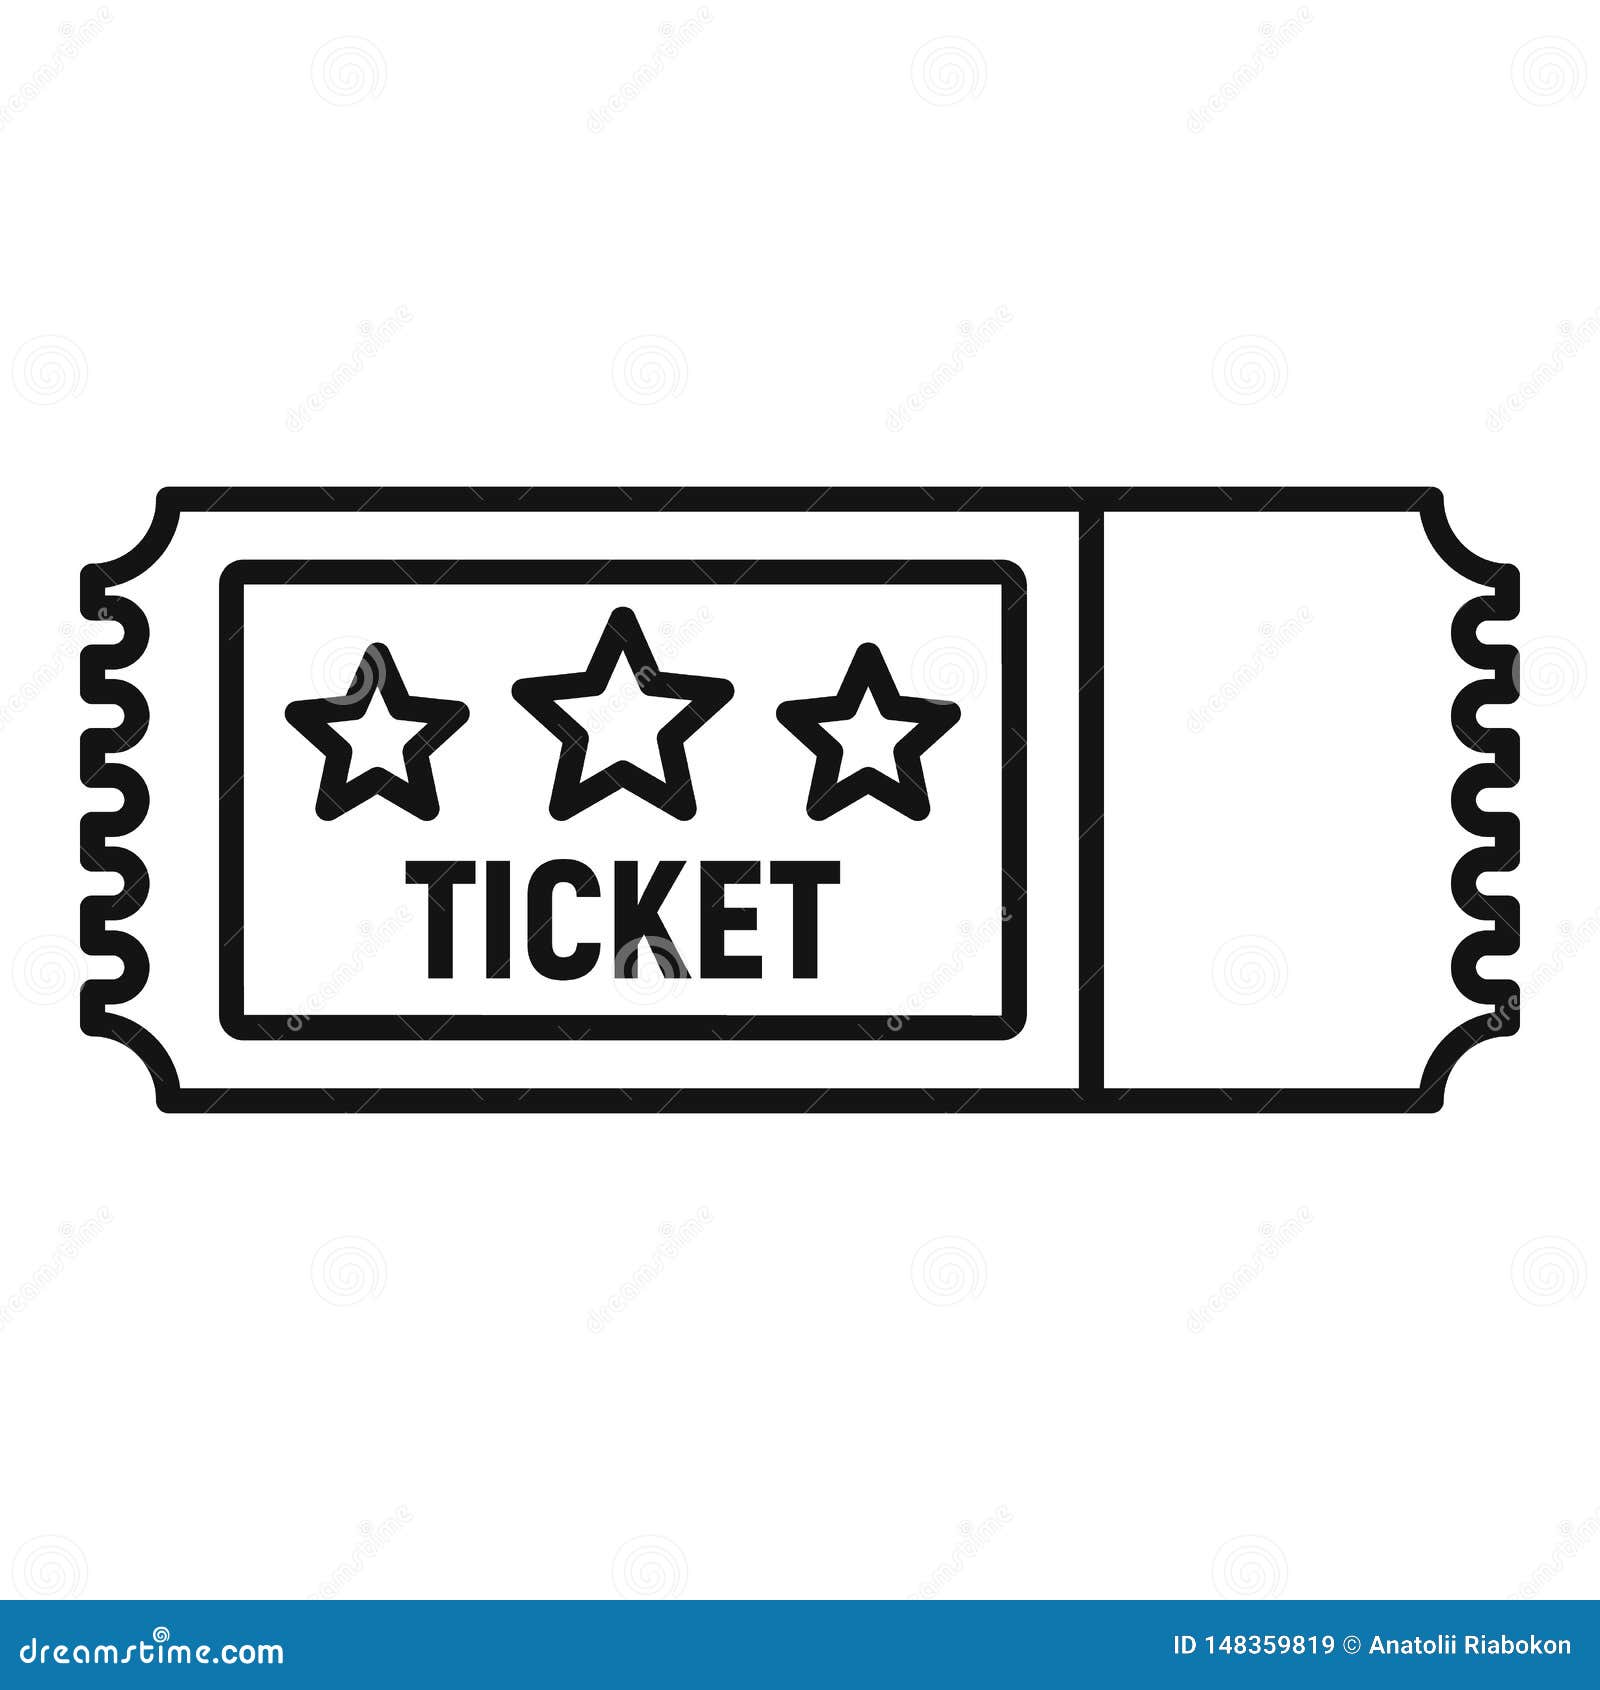 Arena-Ticket